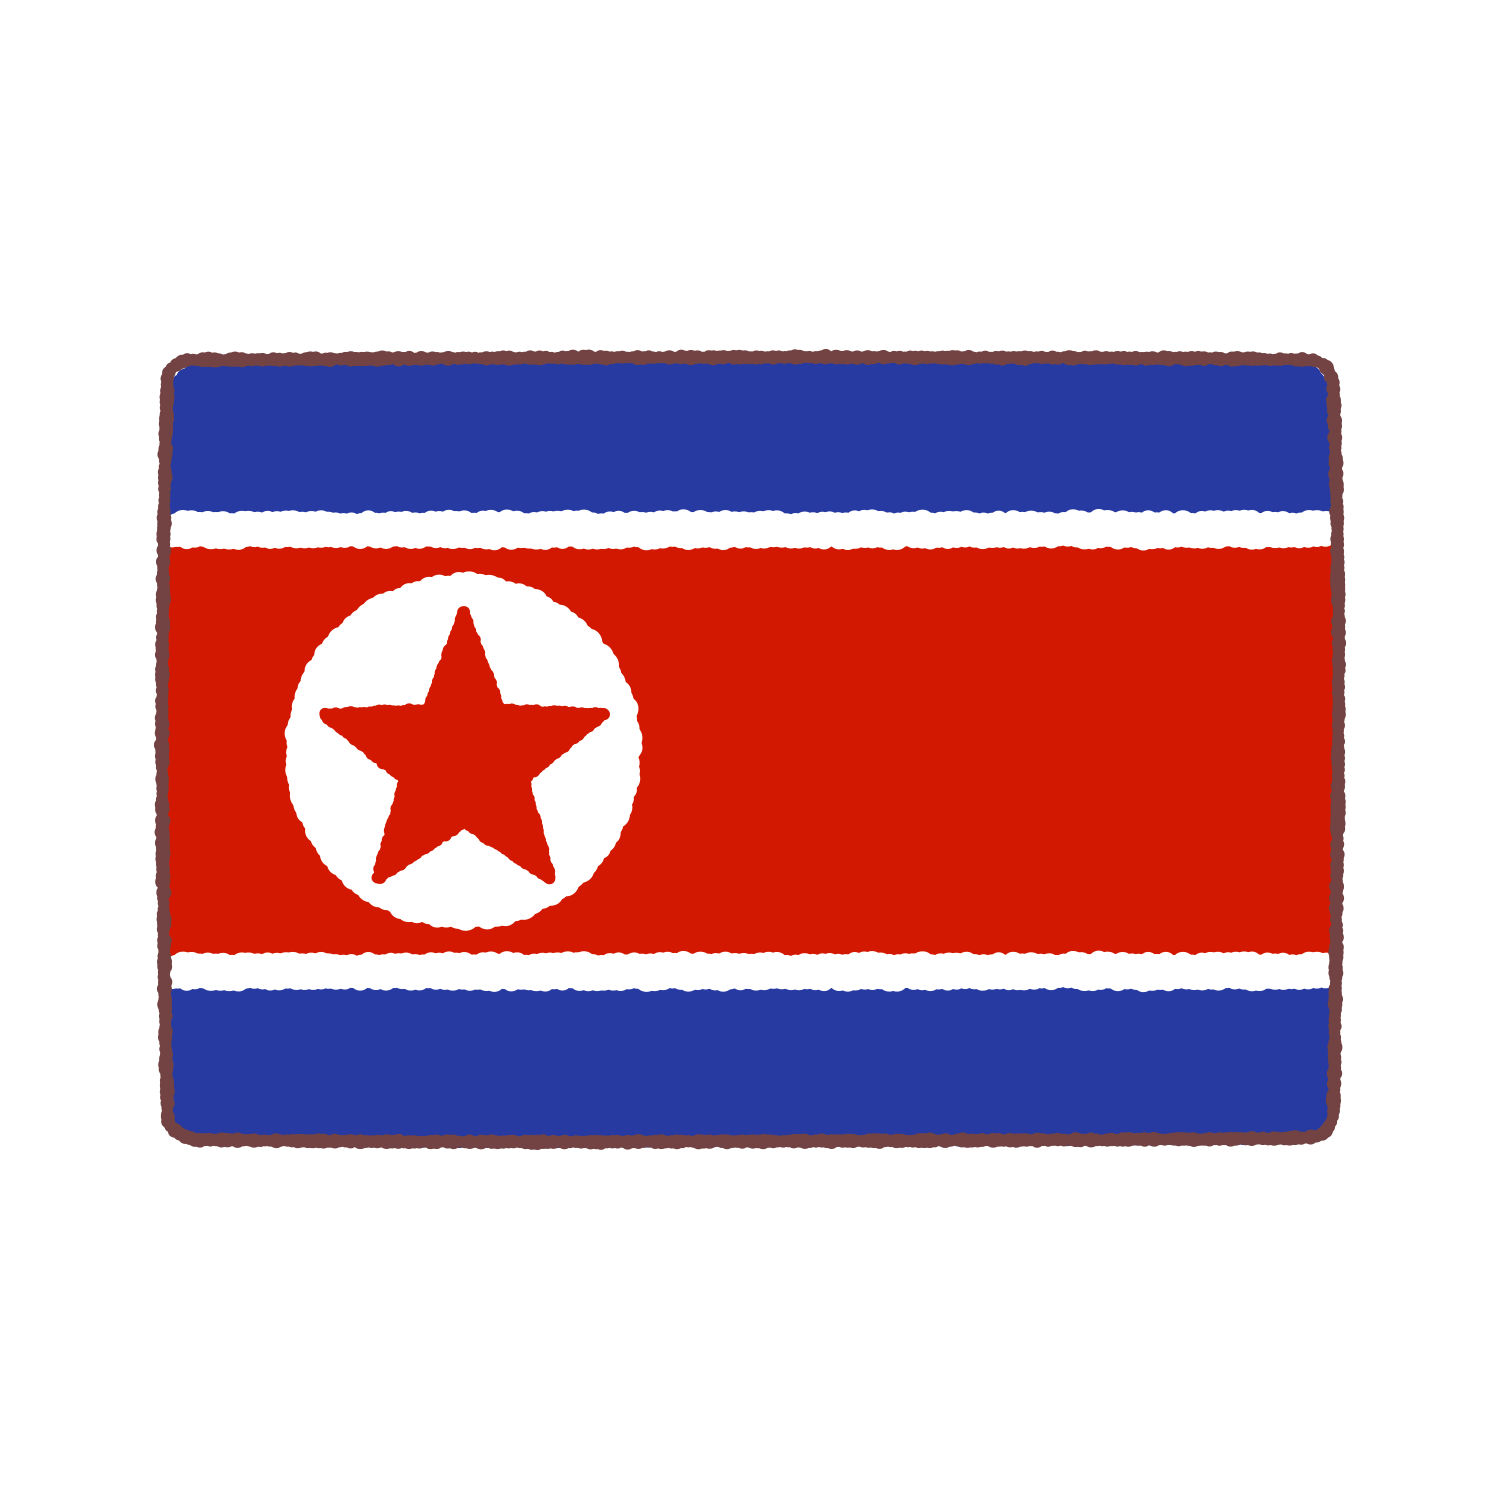 朝鮮民主主義人民共和国国旗のイラスト